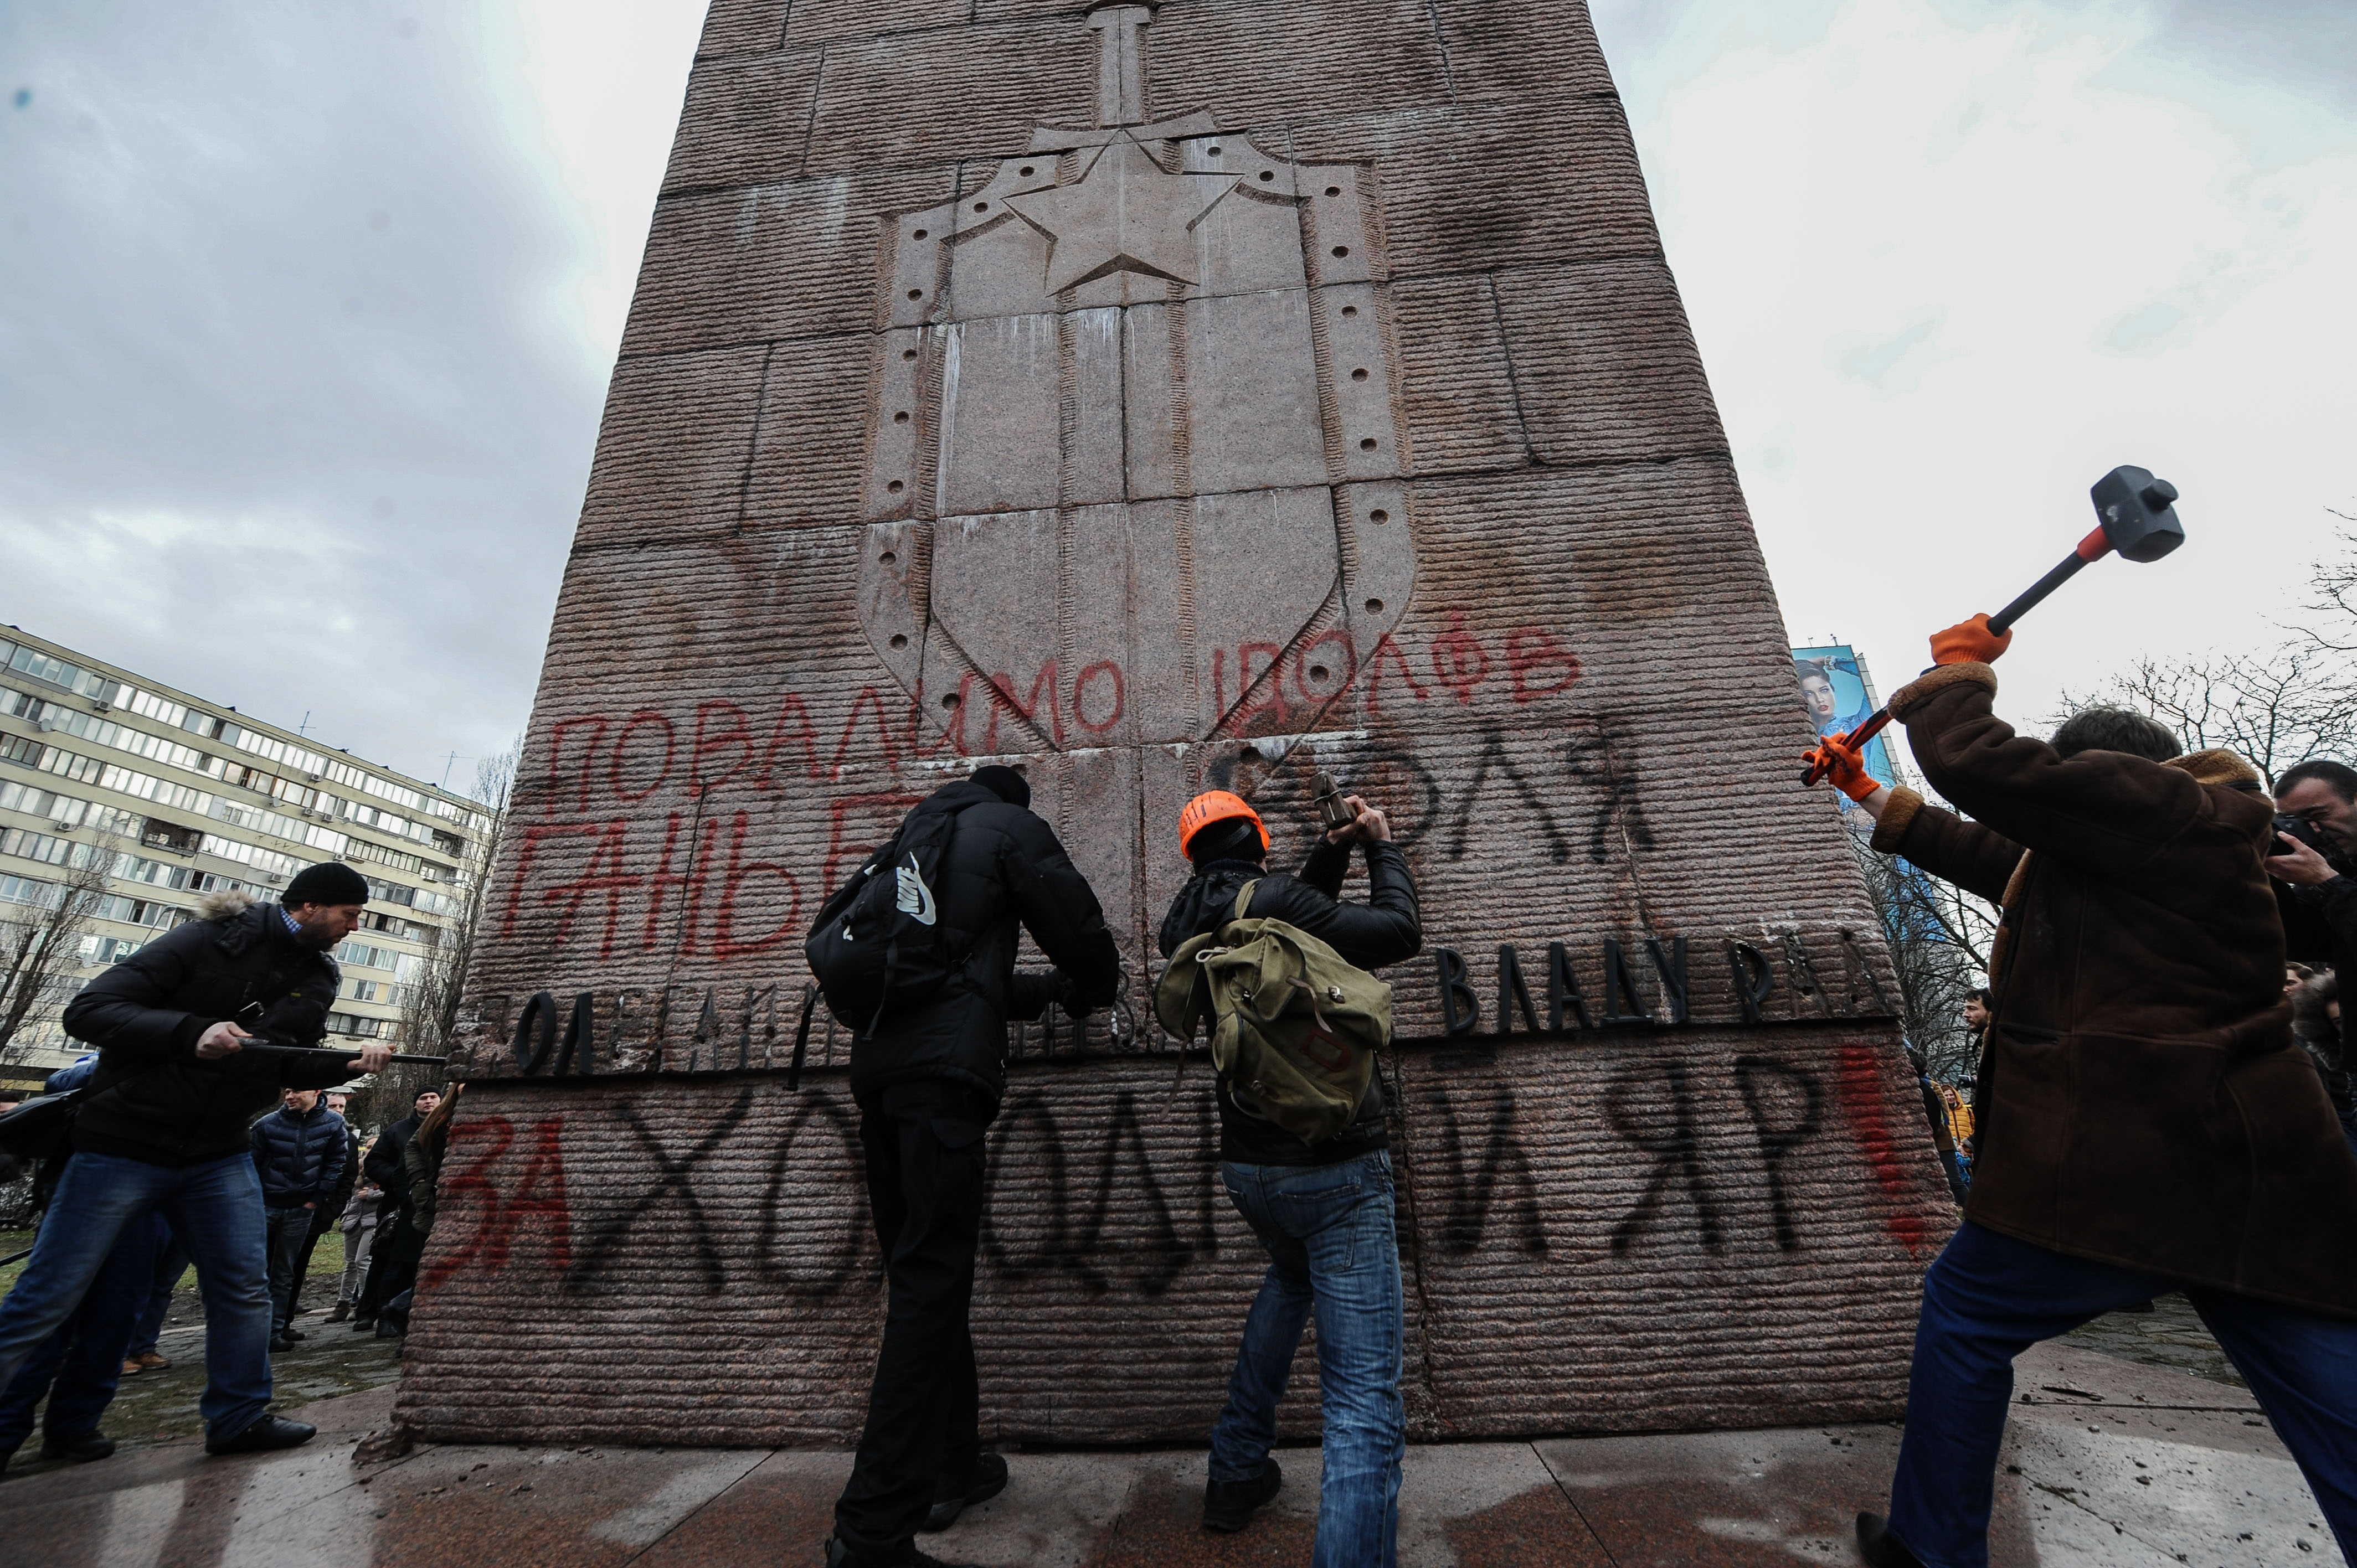 乌克兰“广场革命”图片